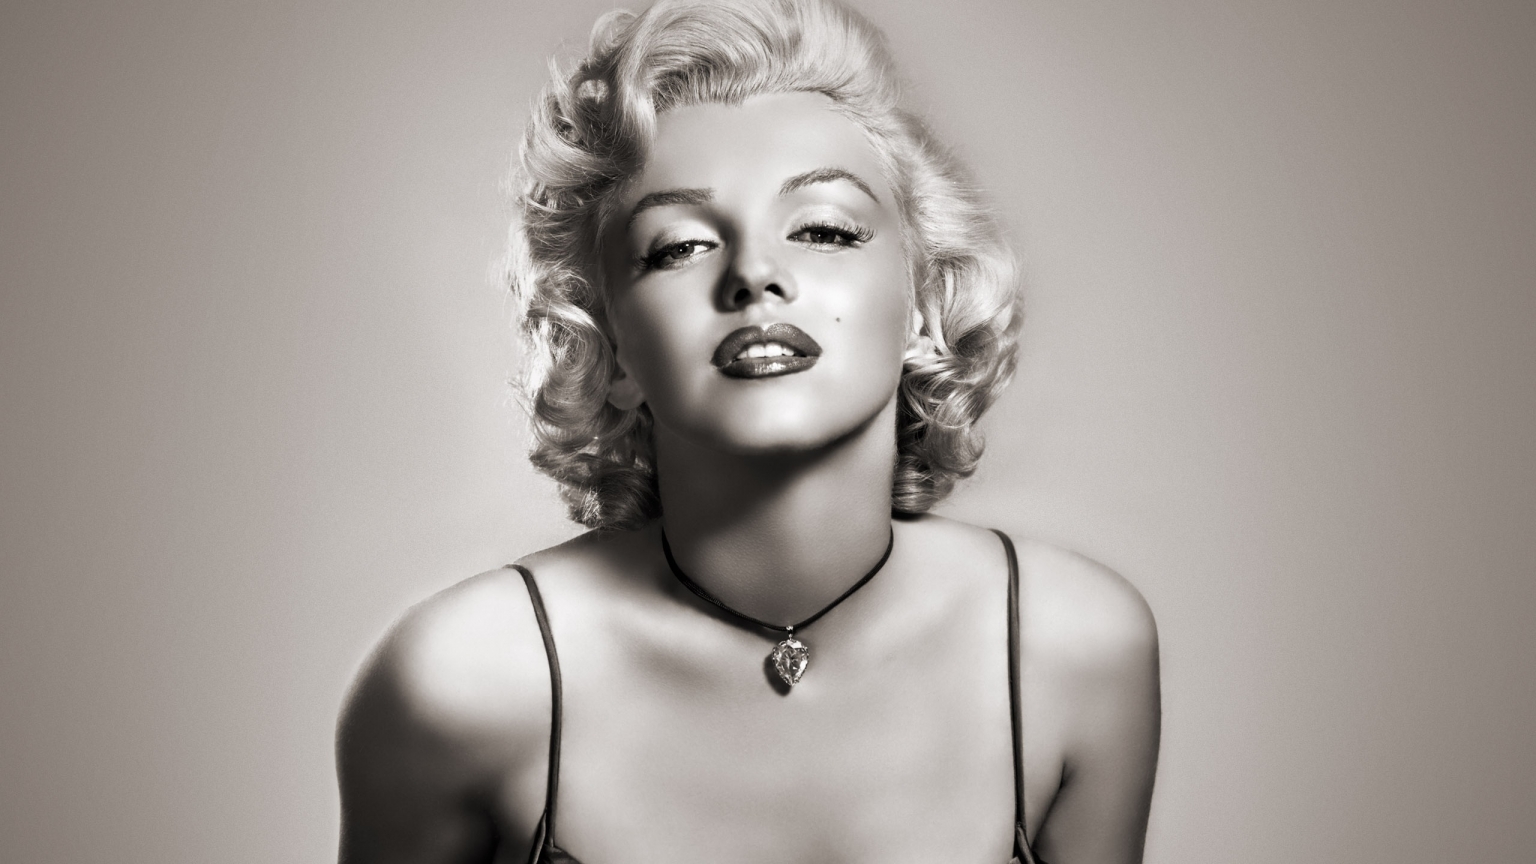 Gorgeous Marilyn Monroe for 1536 x 864 HDTV resolution